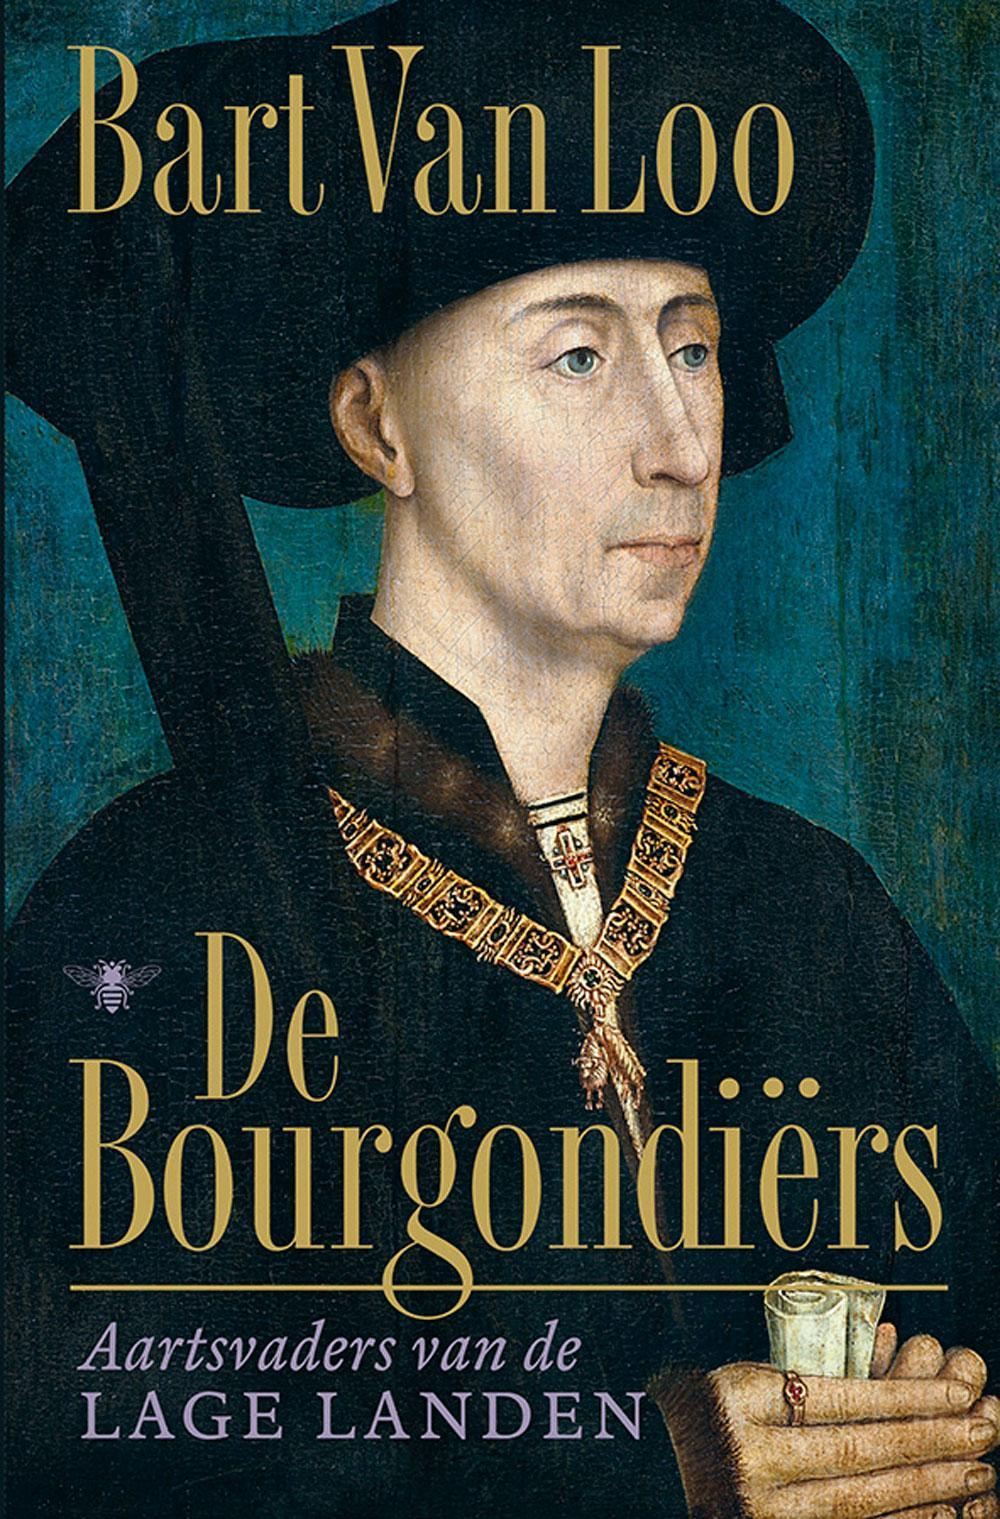 Bart Van Loo, De Bourgondiërs: aartsvaders van de Lage Landen, De Bezige Bij, 607 blz., 34,99 euro.